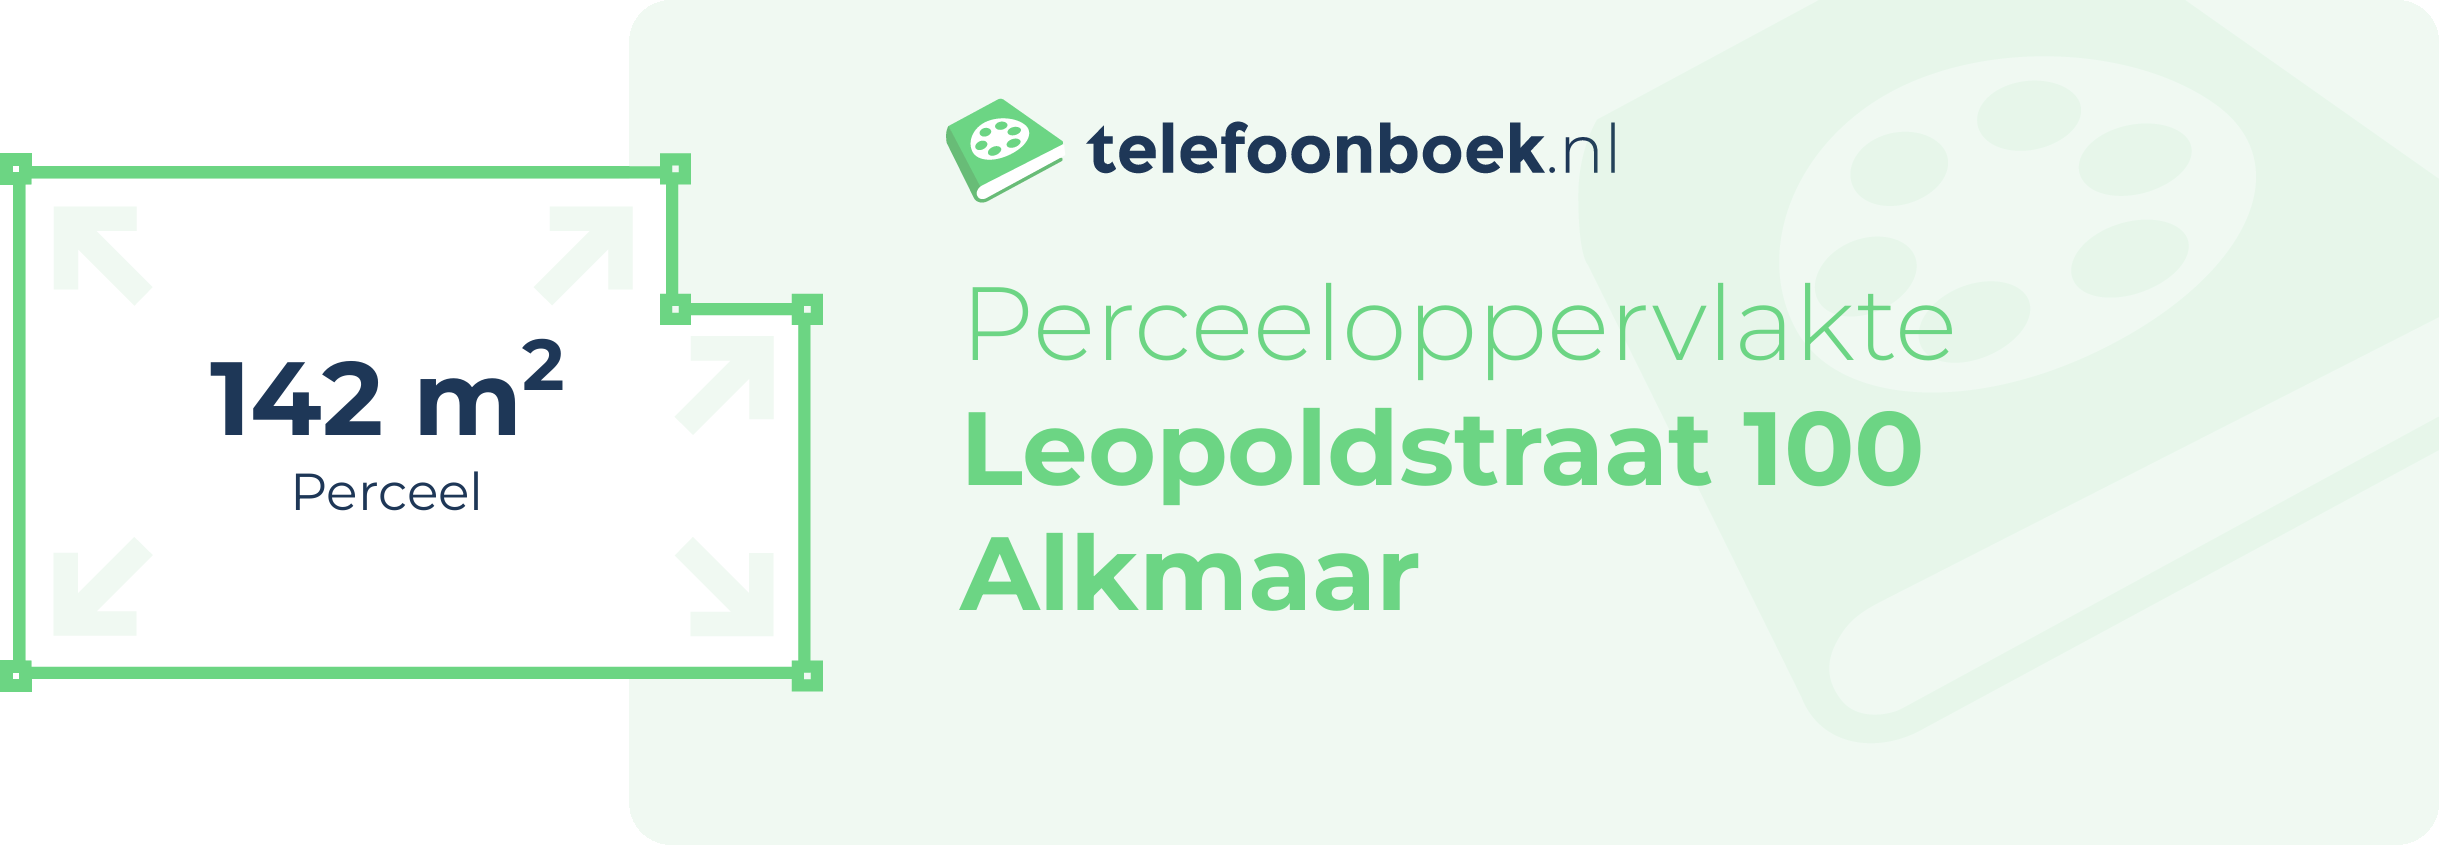 Perceeloppervlakte Leopoldstraat 100 Alkmaar